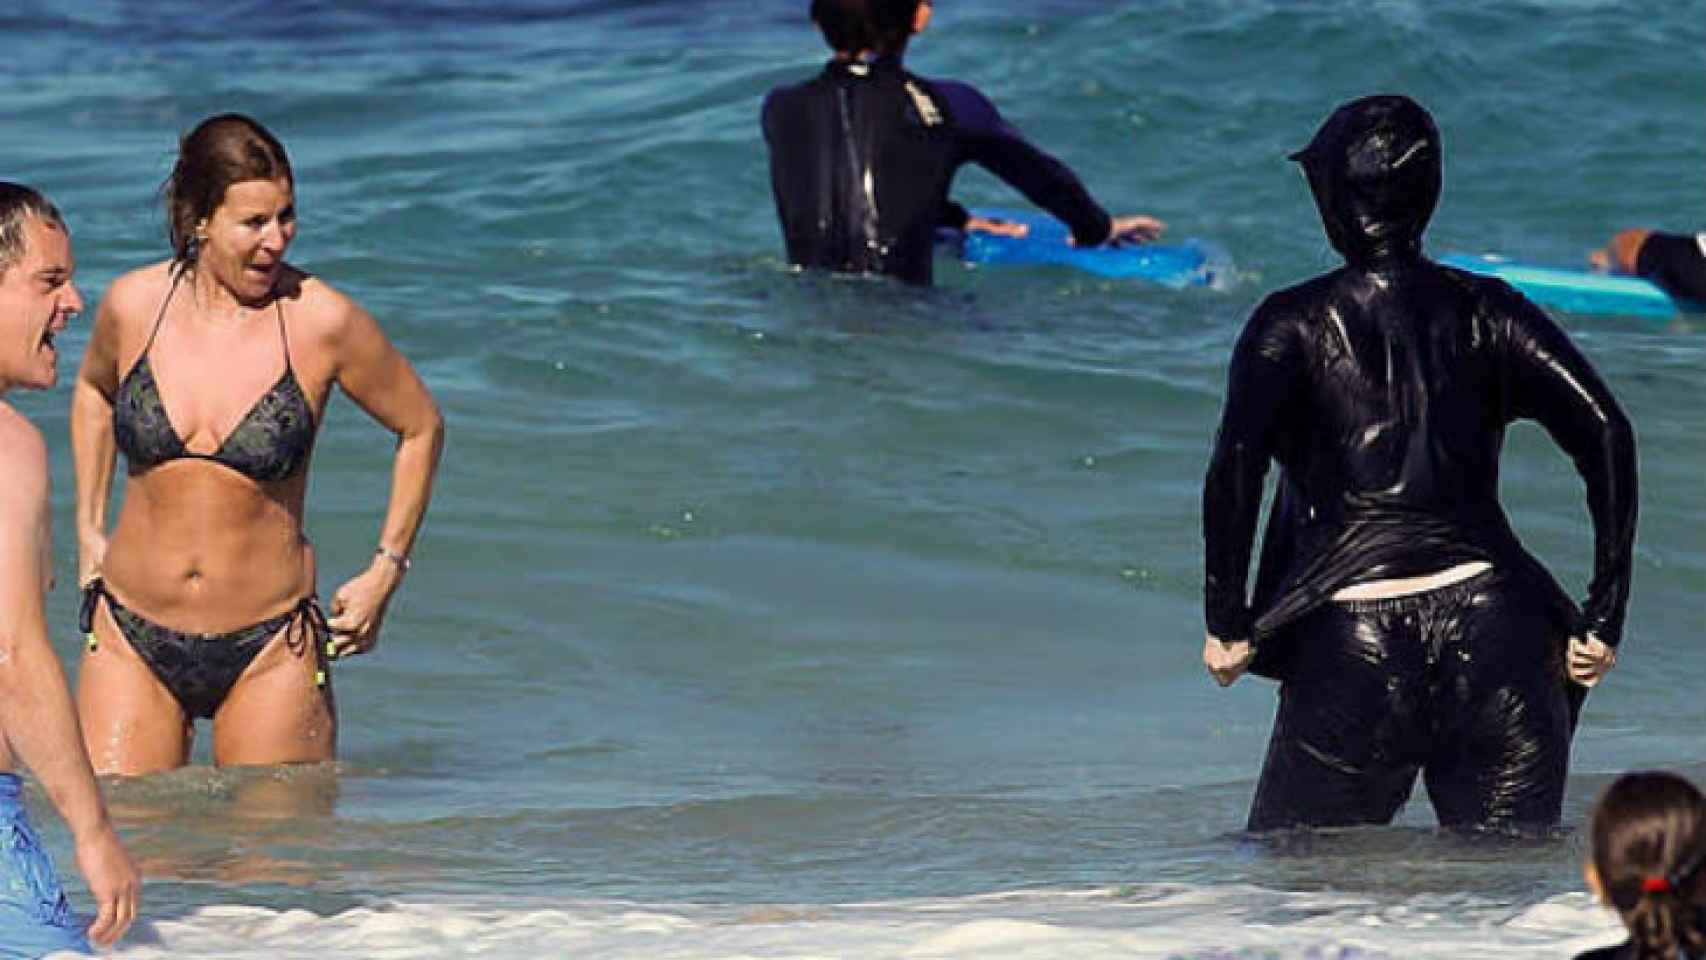 Una mujer con un burkini en una playa.